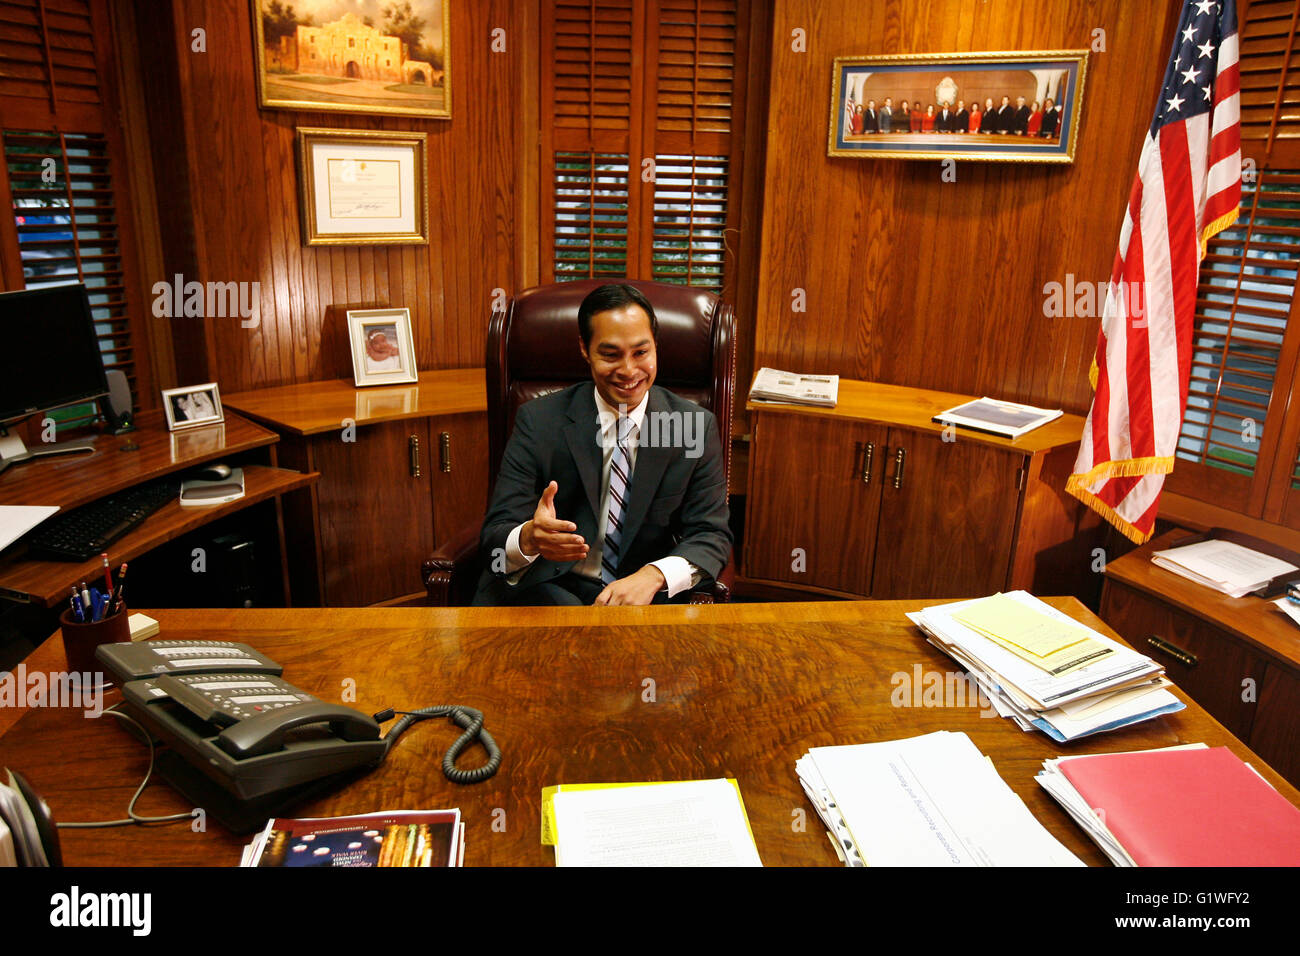 San Antonio Bürgermeister Julian Castro in seinem Büro in San Antonio, Texas. Stockfoto